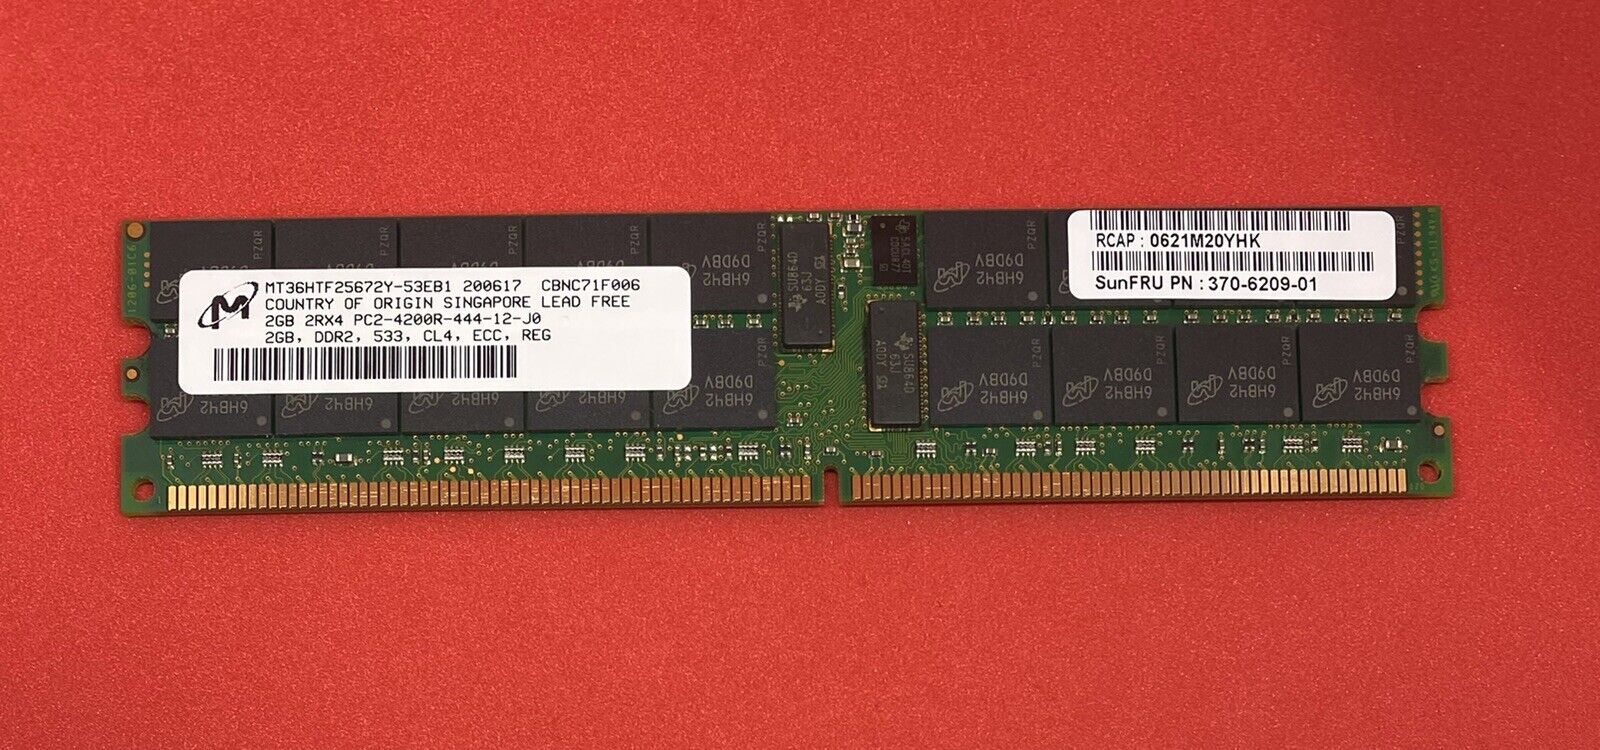 SUN 370-6209 2GB PC2-4200R 533MHz DDR3 ECC SERVER RAM Micron MT36HTF25672Y-53EB1